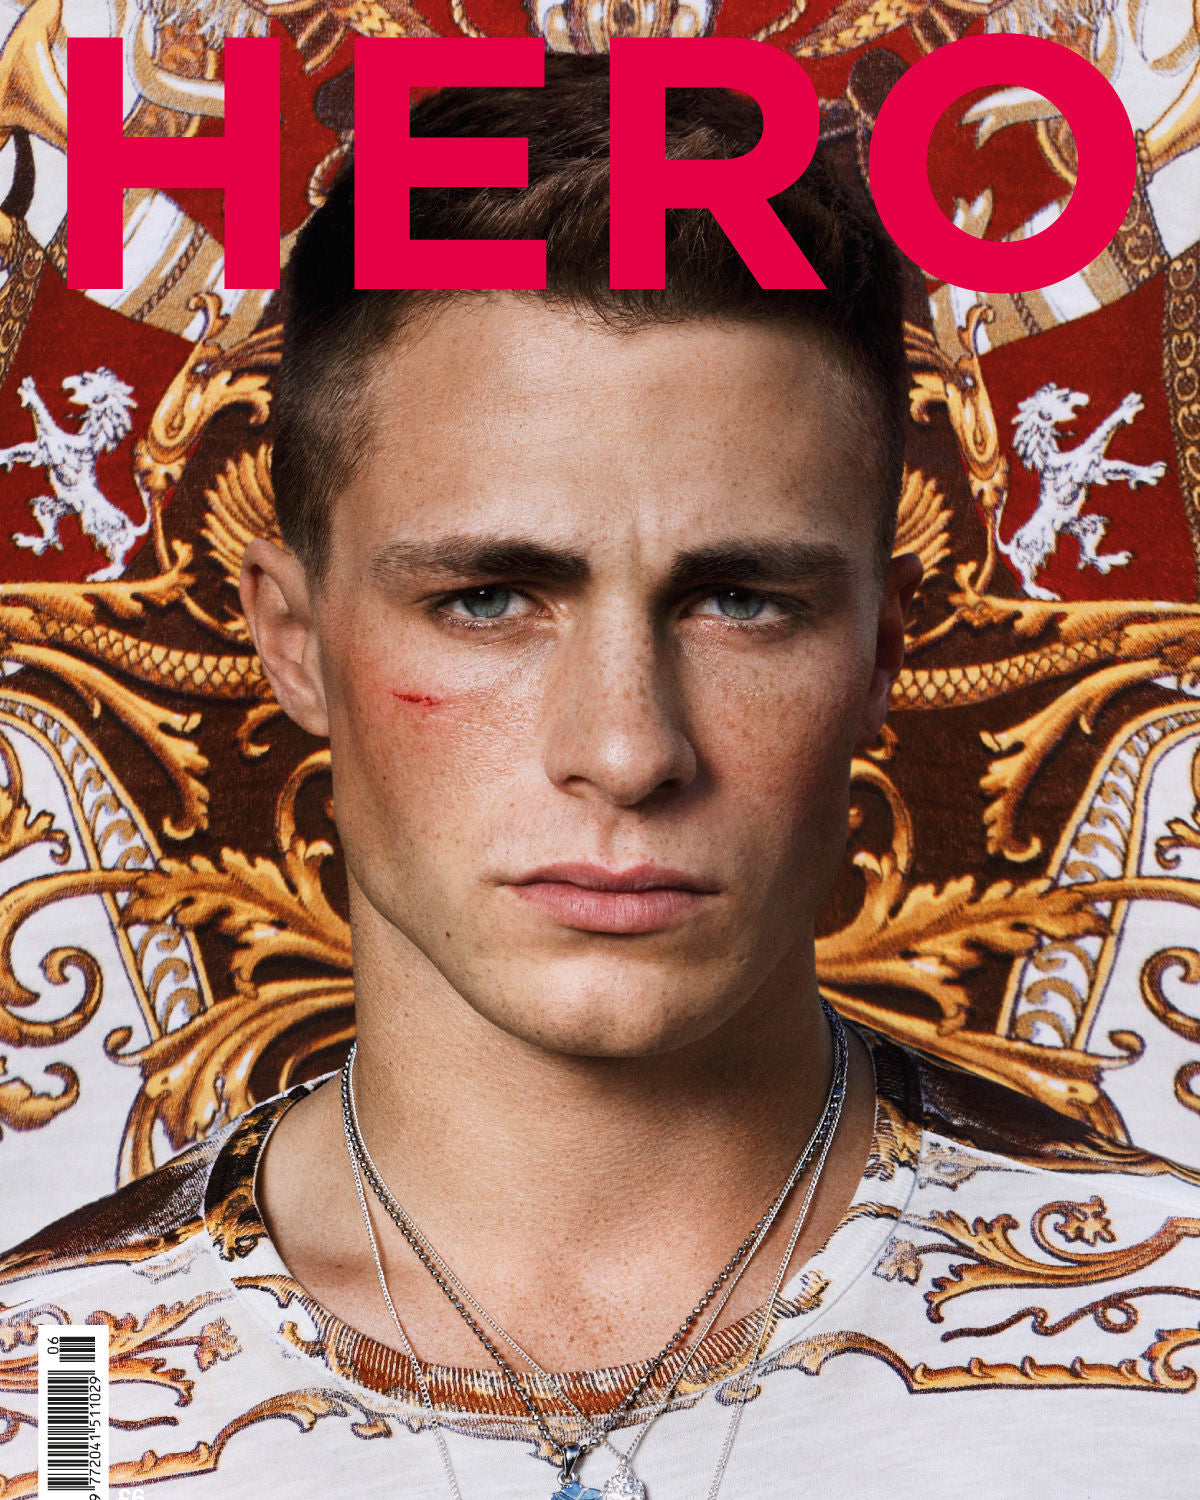 Hero Magazine - Issue 6 - 2011 - Colton Haynes